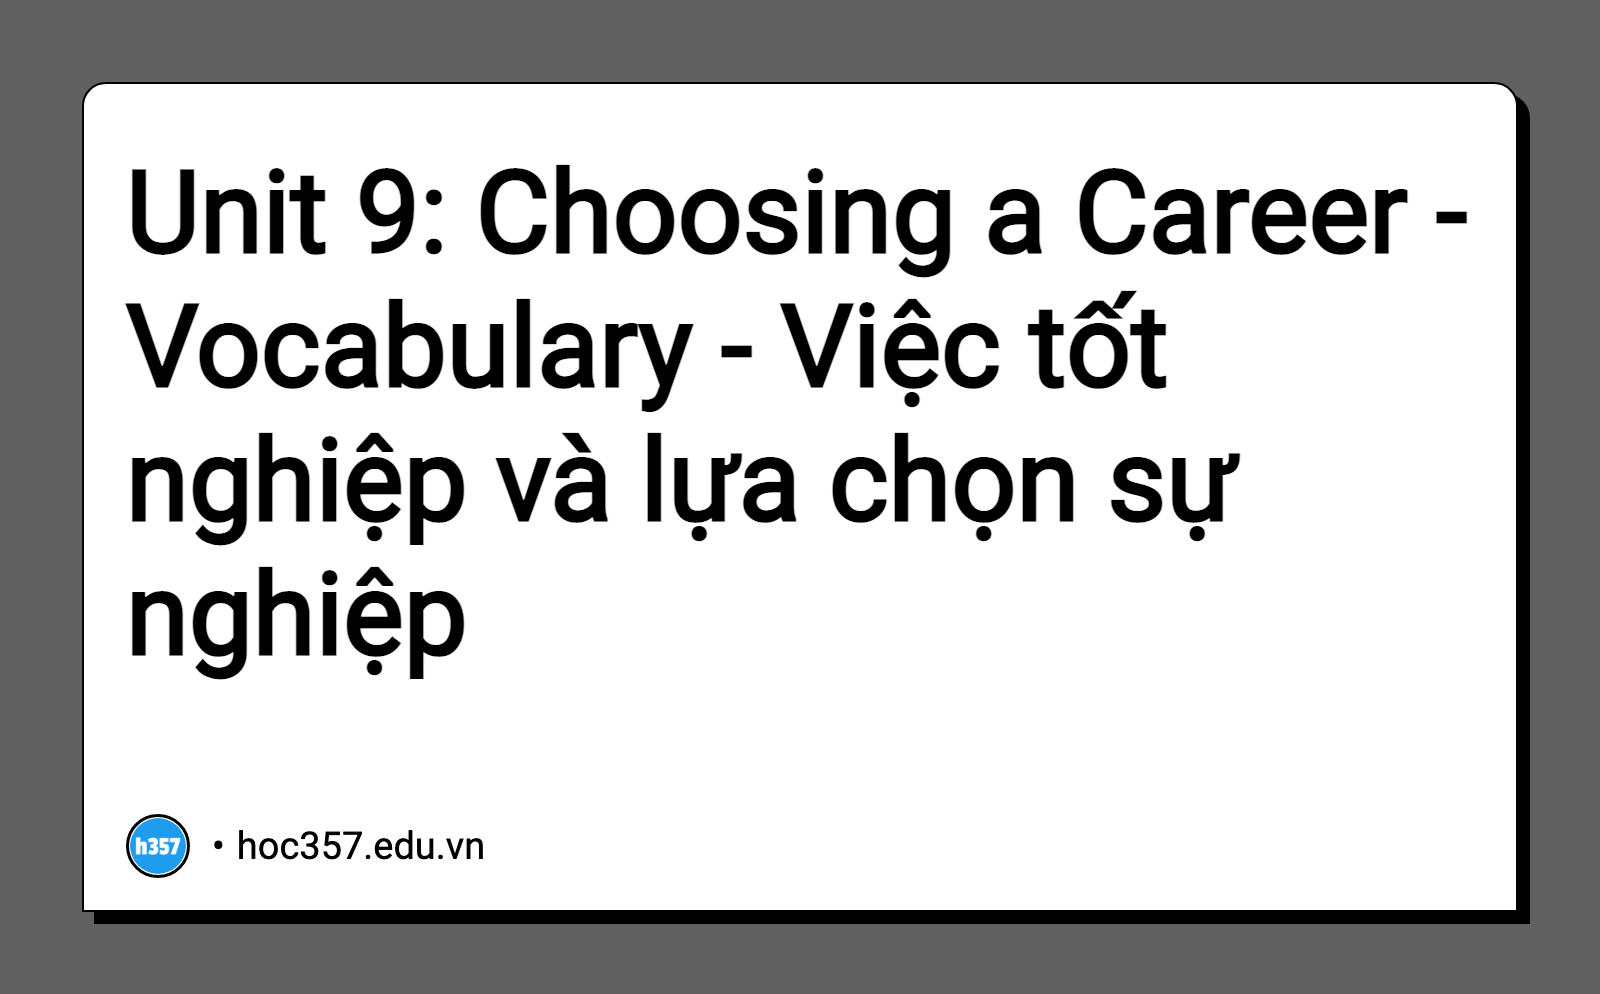 Hình minh họa Unit 9: Choosing a Career - Vocabulary - Việc tốt nghiệp và lựa chọn sự nghiệp